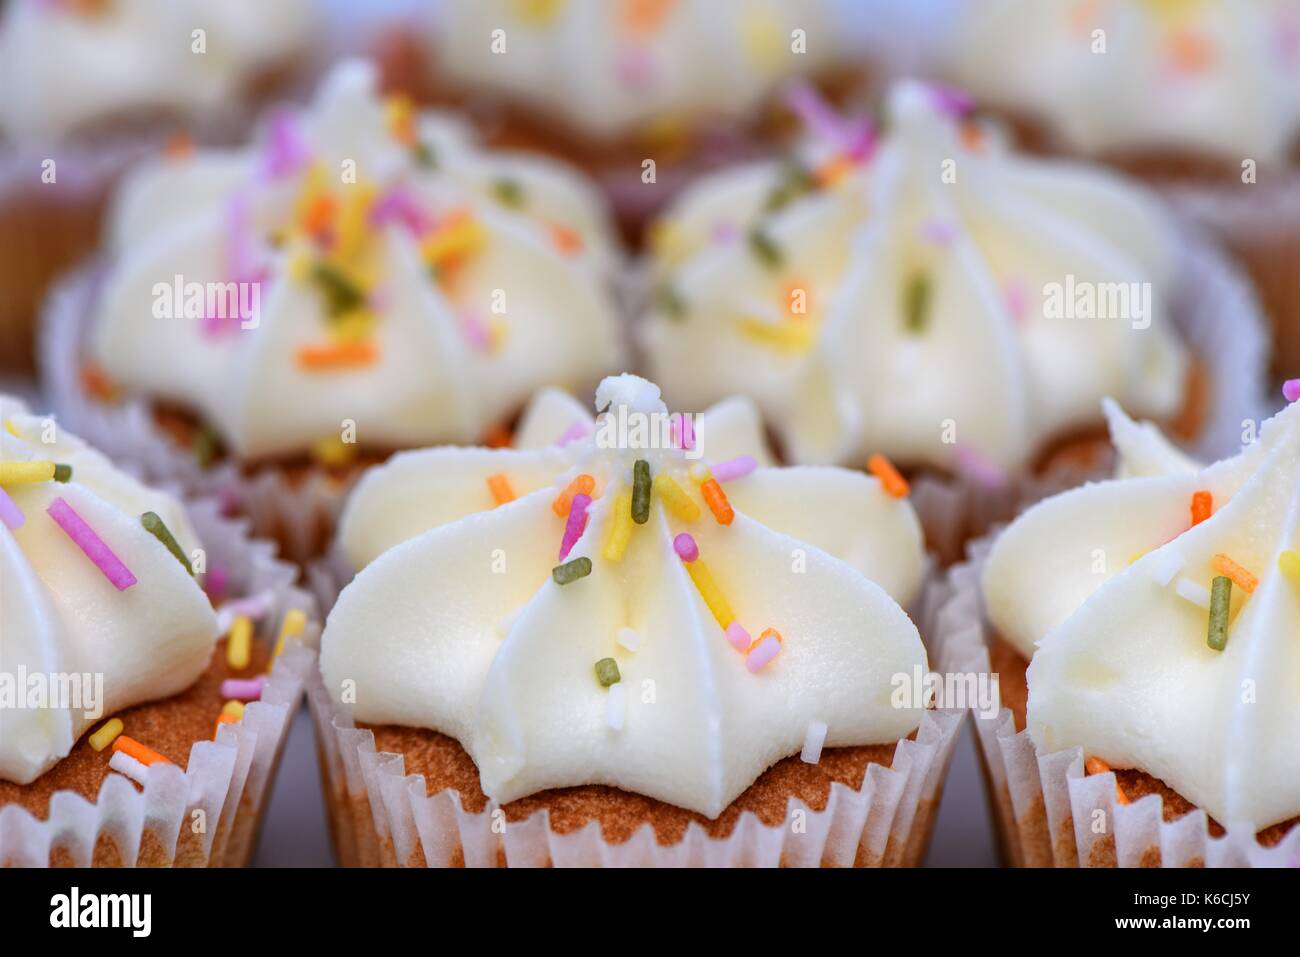 Nahaufnahme makro Food Fotografie Bild der schönen bunten Märchen Kuchen mit Streuseln auf unscharfen Hintergrund und Stockfoto